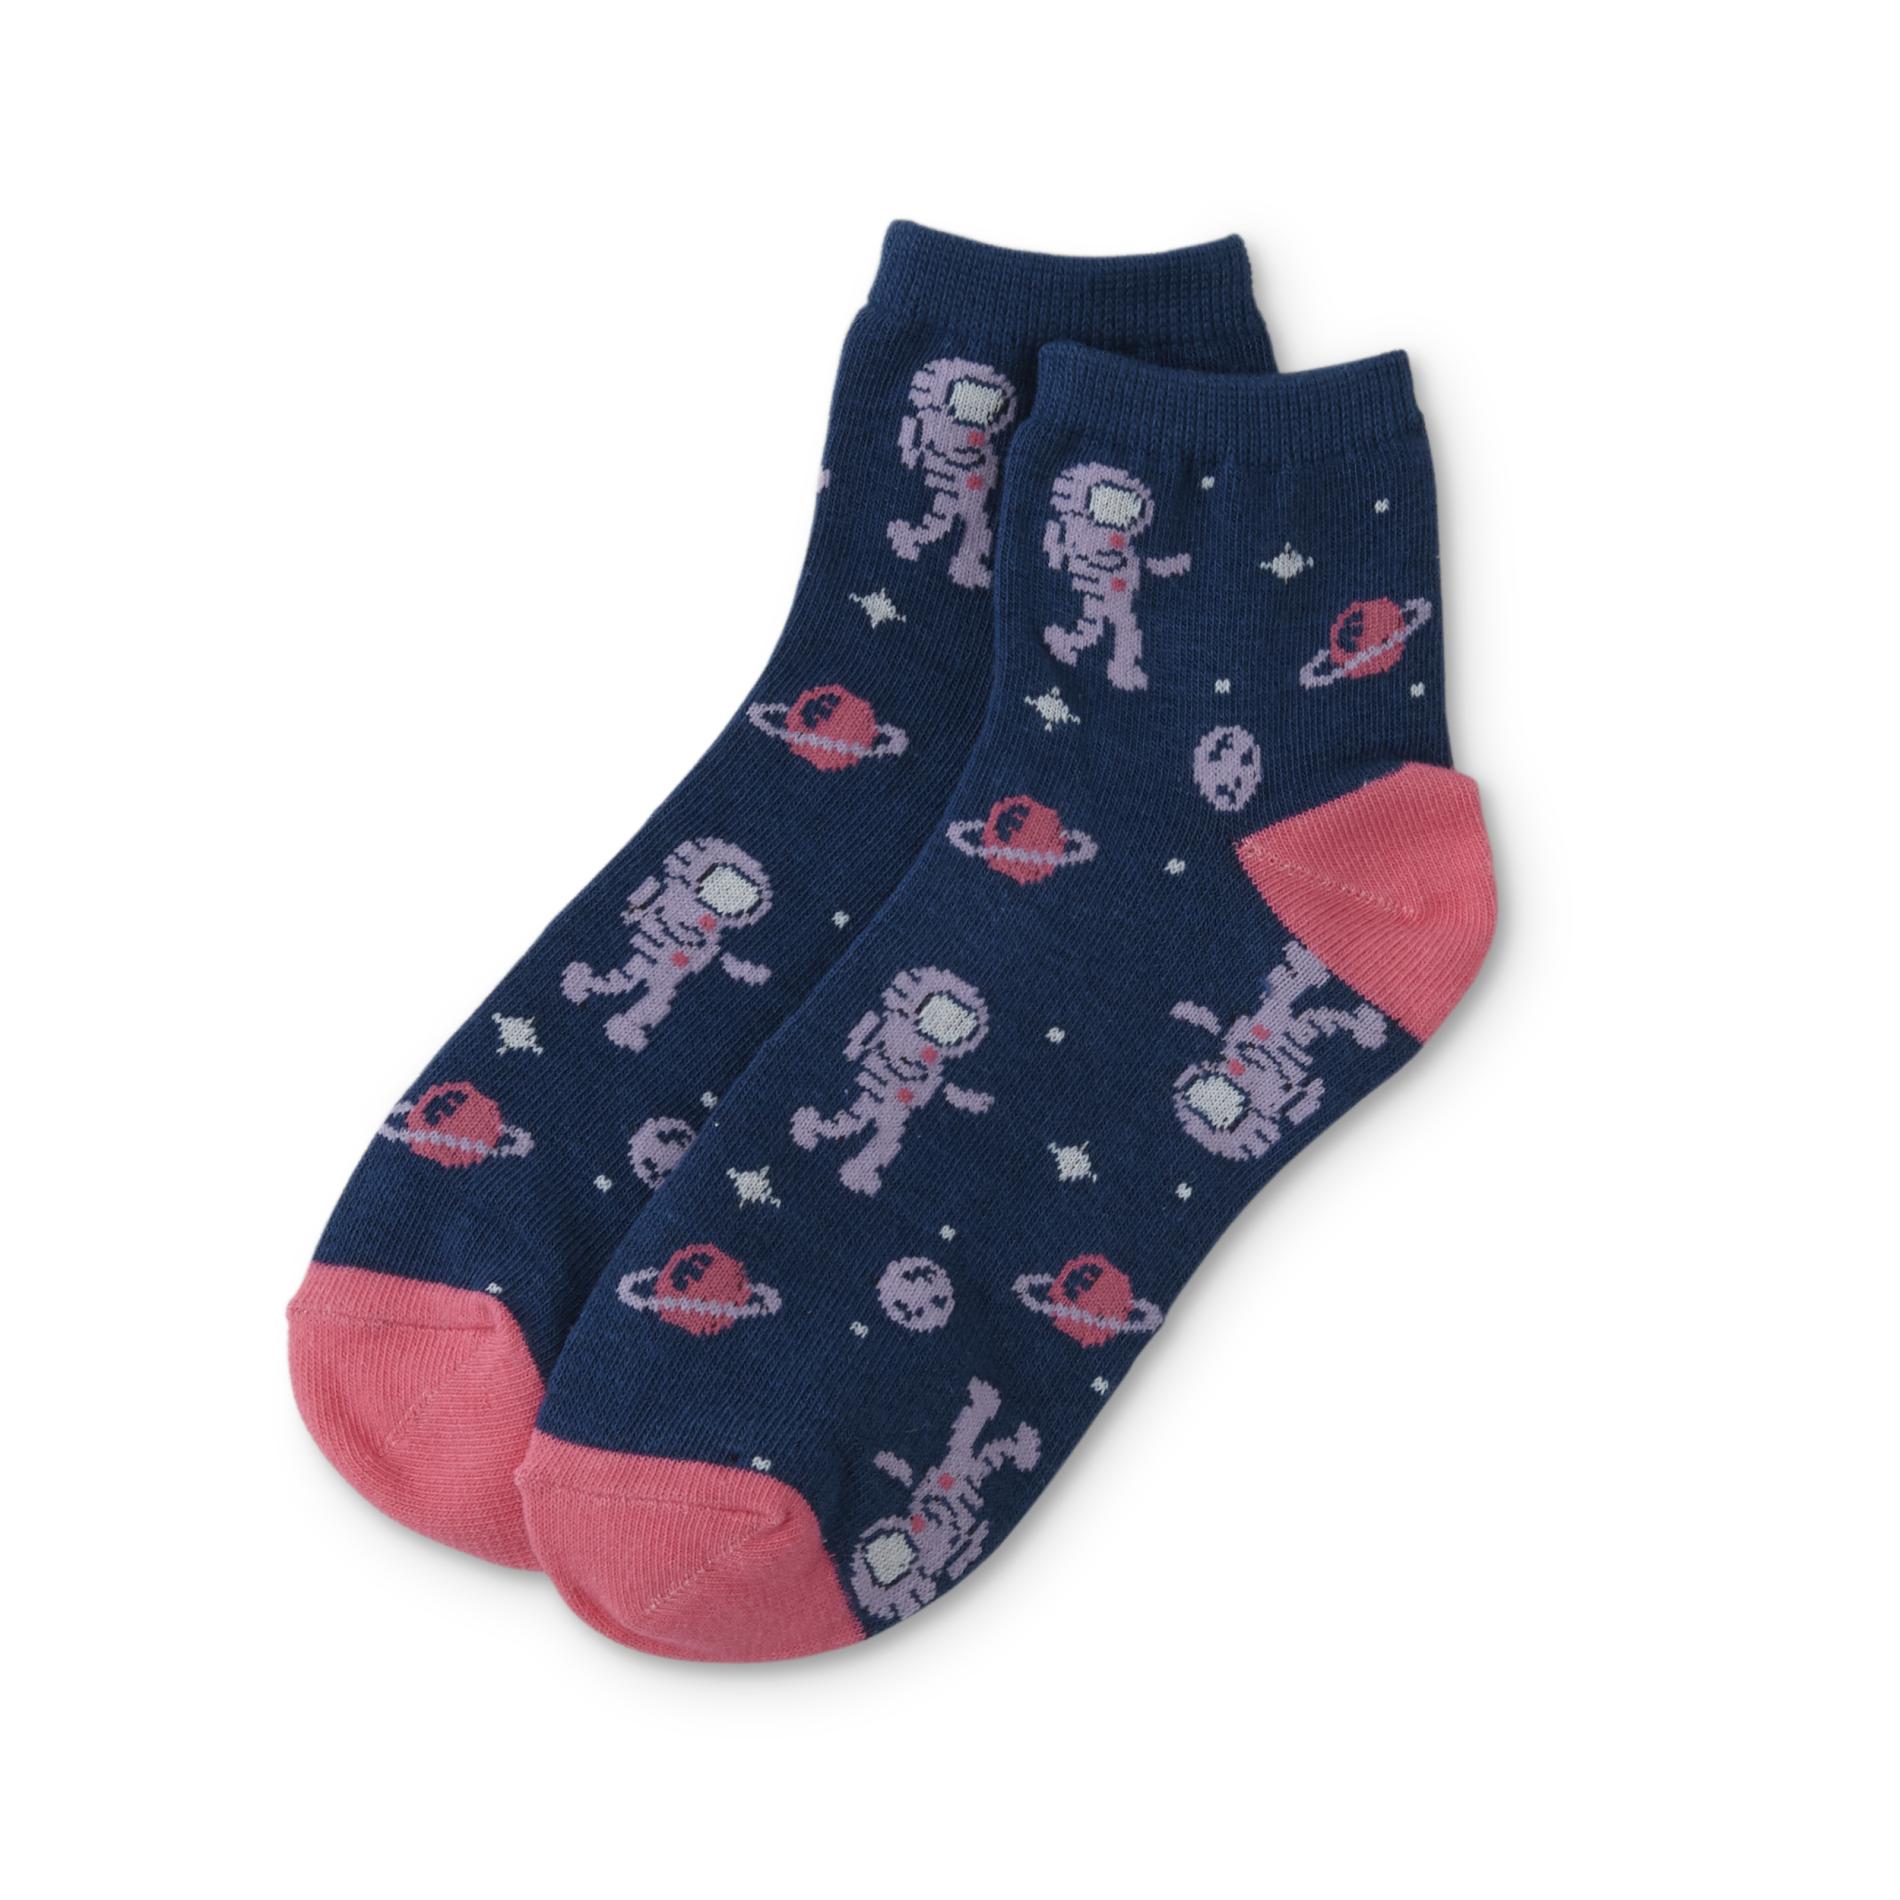 Girls' Novelty Quarter Socks - Space